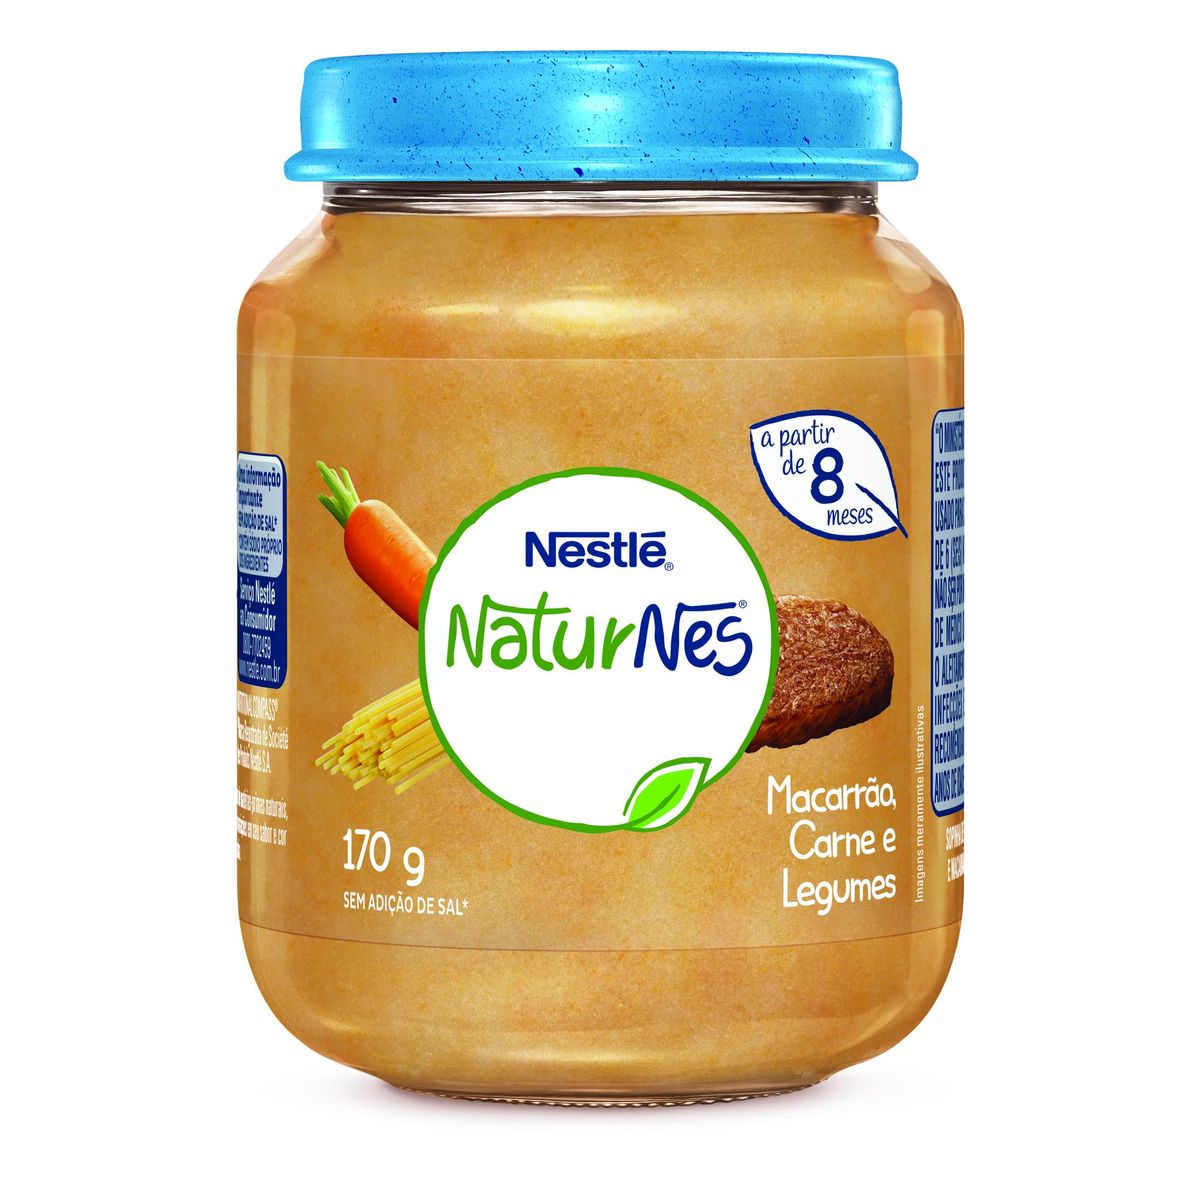 Papinha Nestlé Naturnes Macarrão, Carne e Legumes 170g